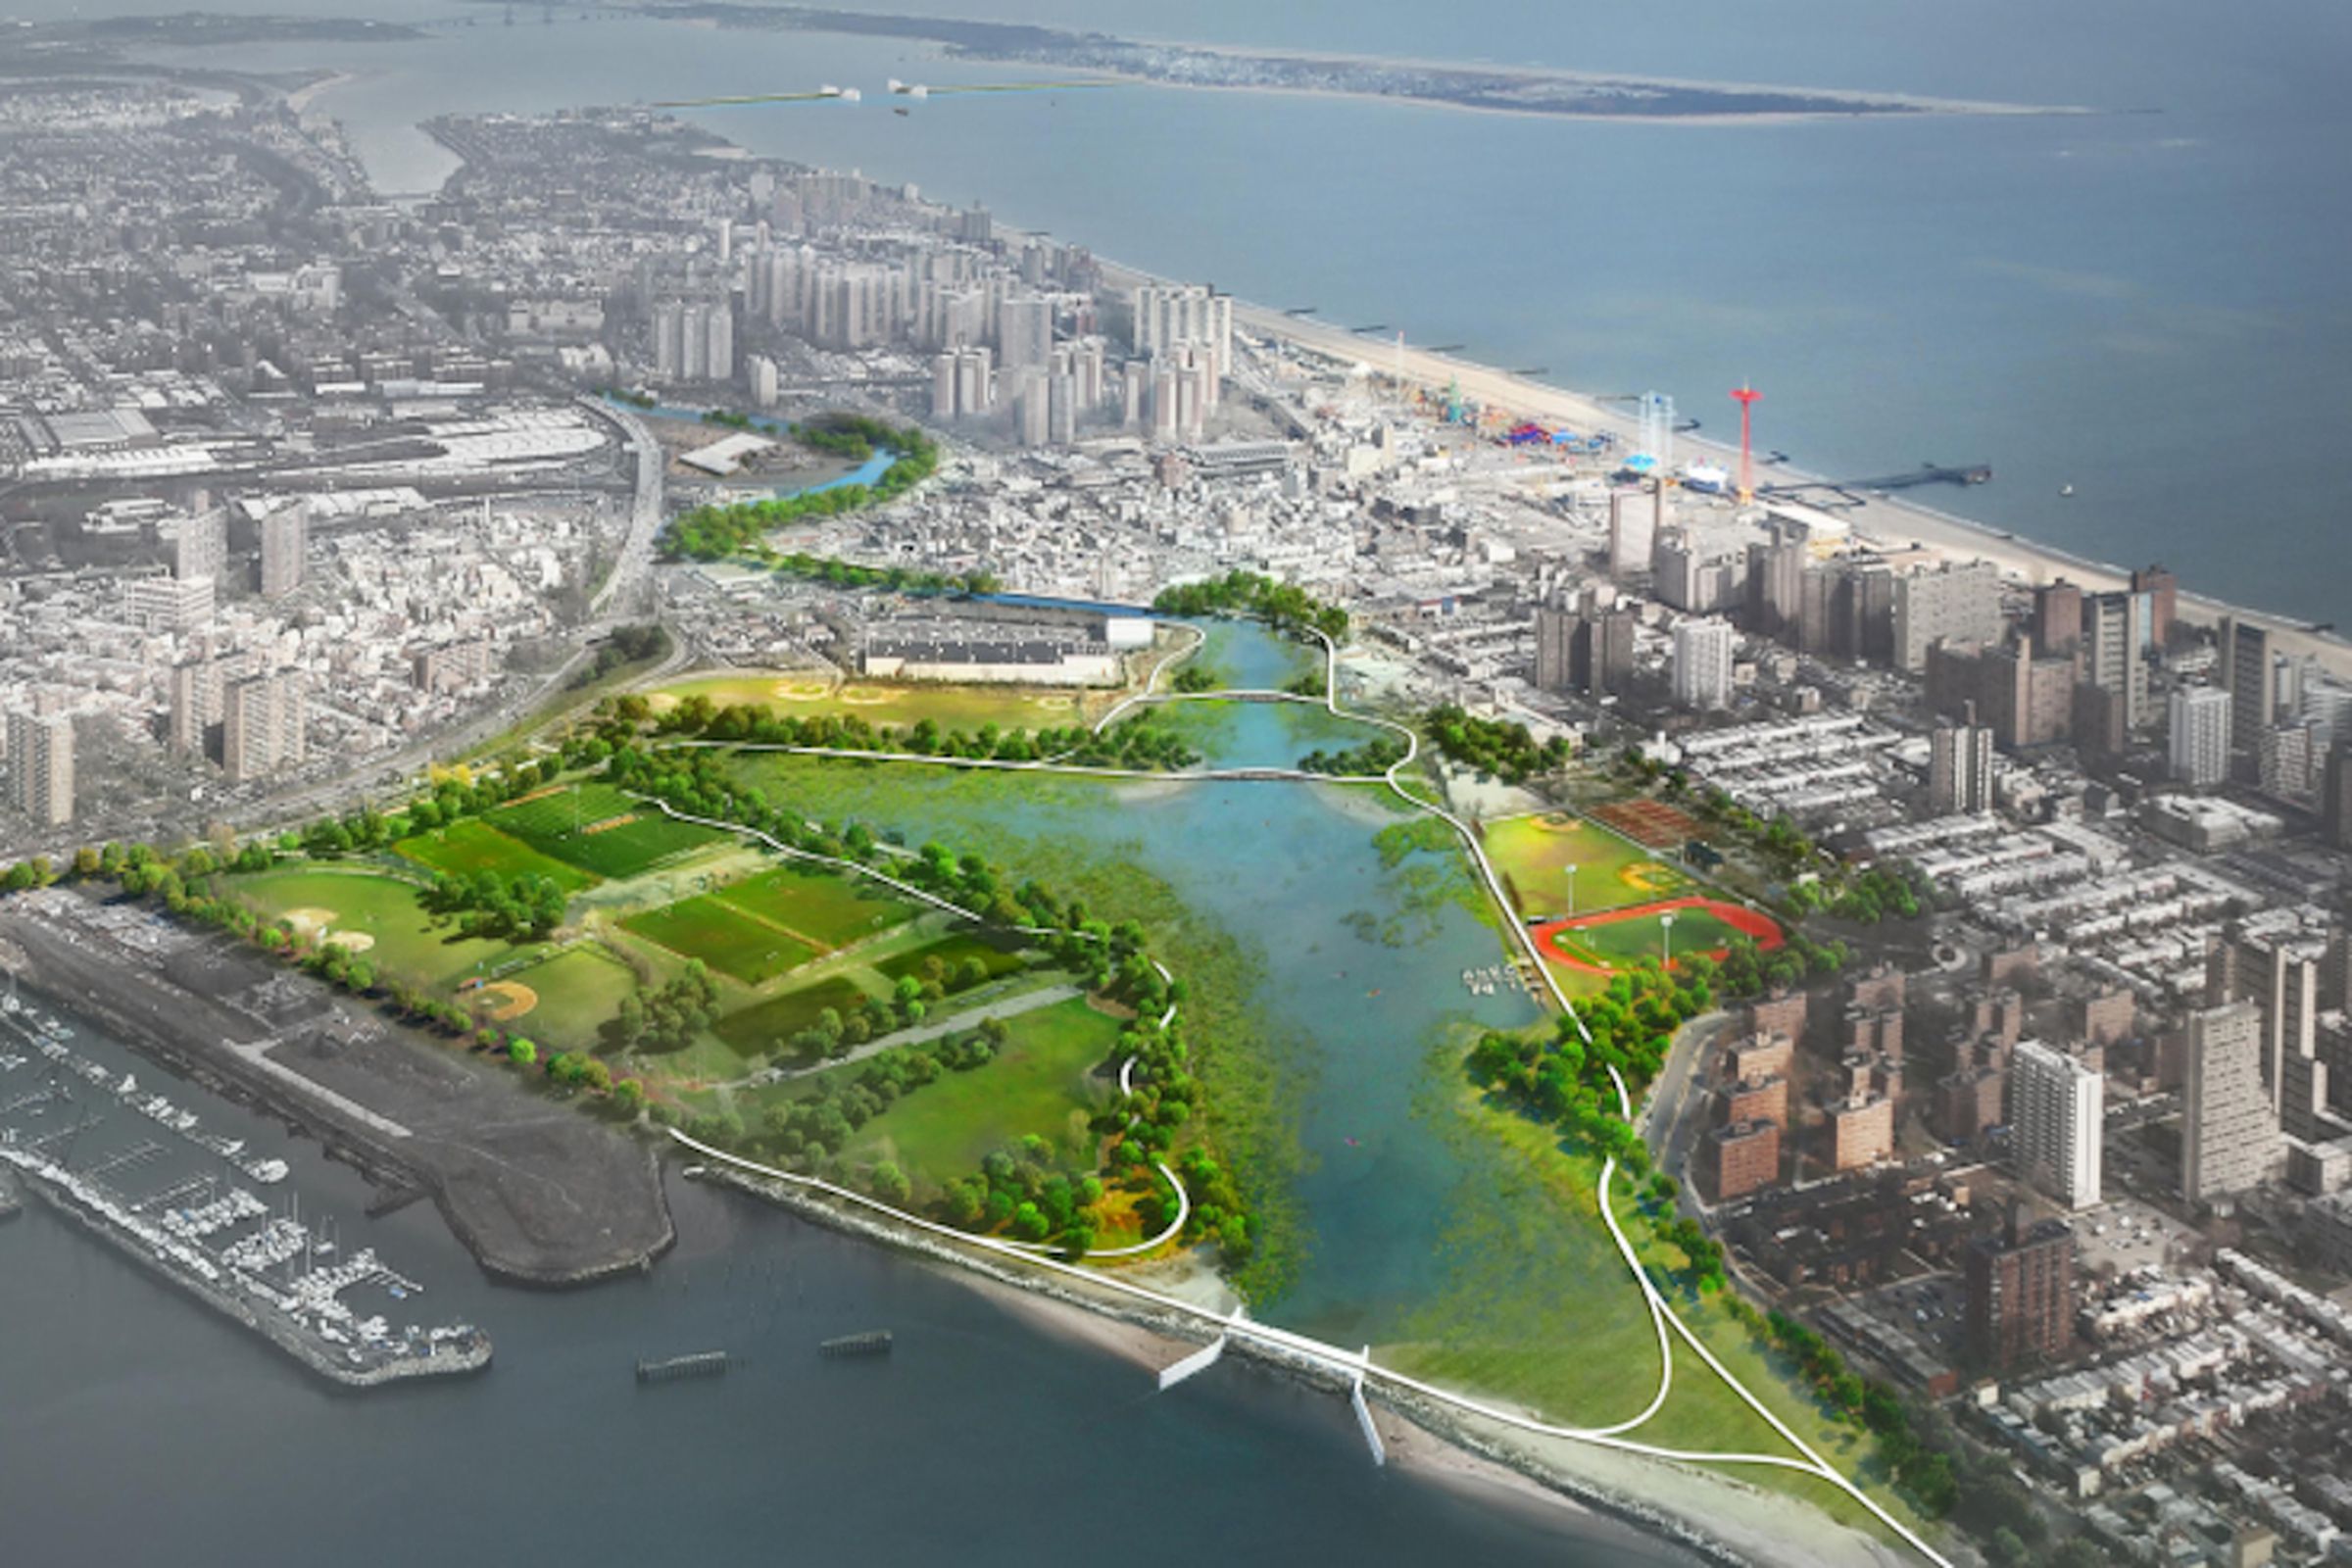 NYC Coney Island Creek wetlands plan (Credit; NYC.gov)